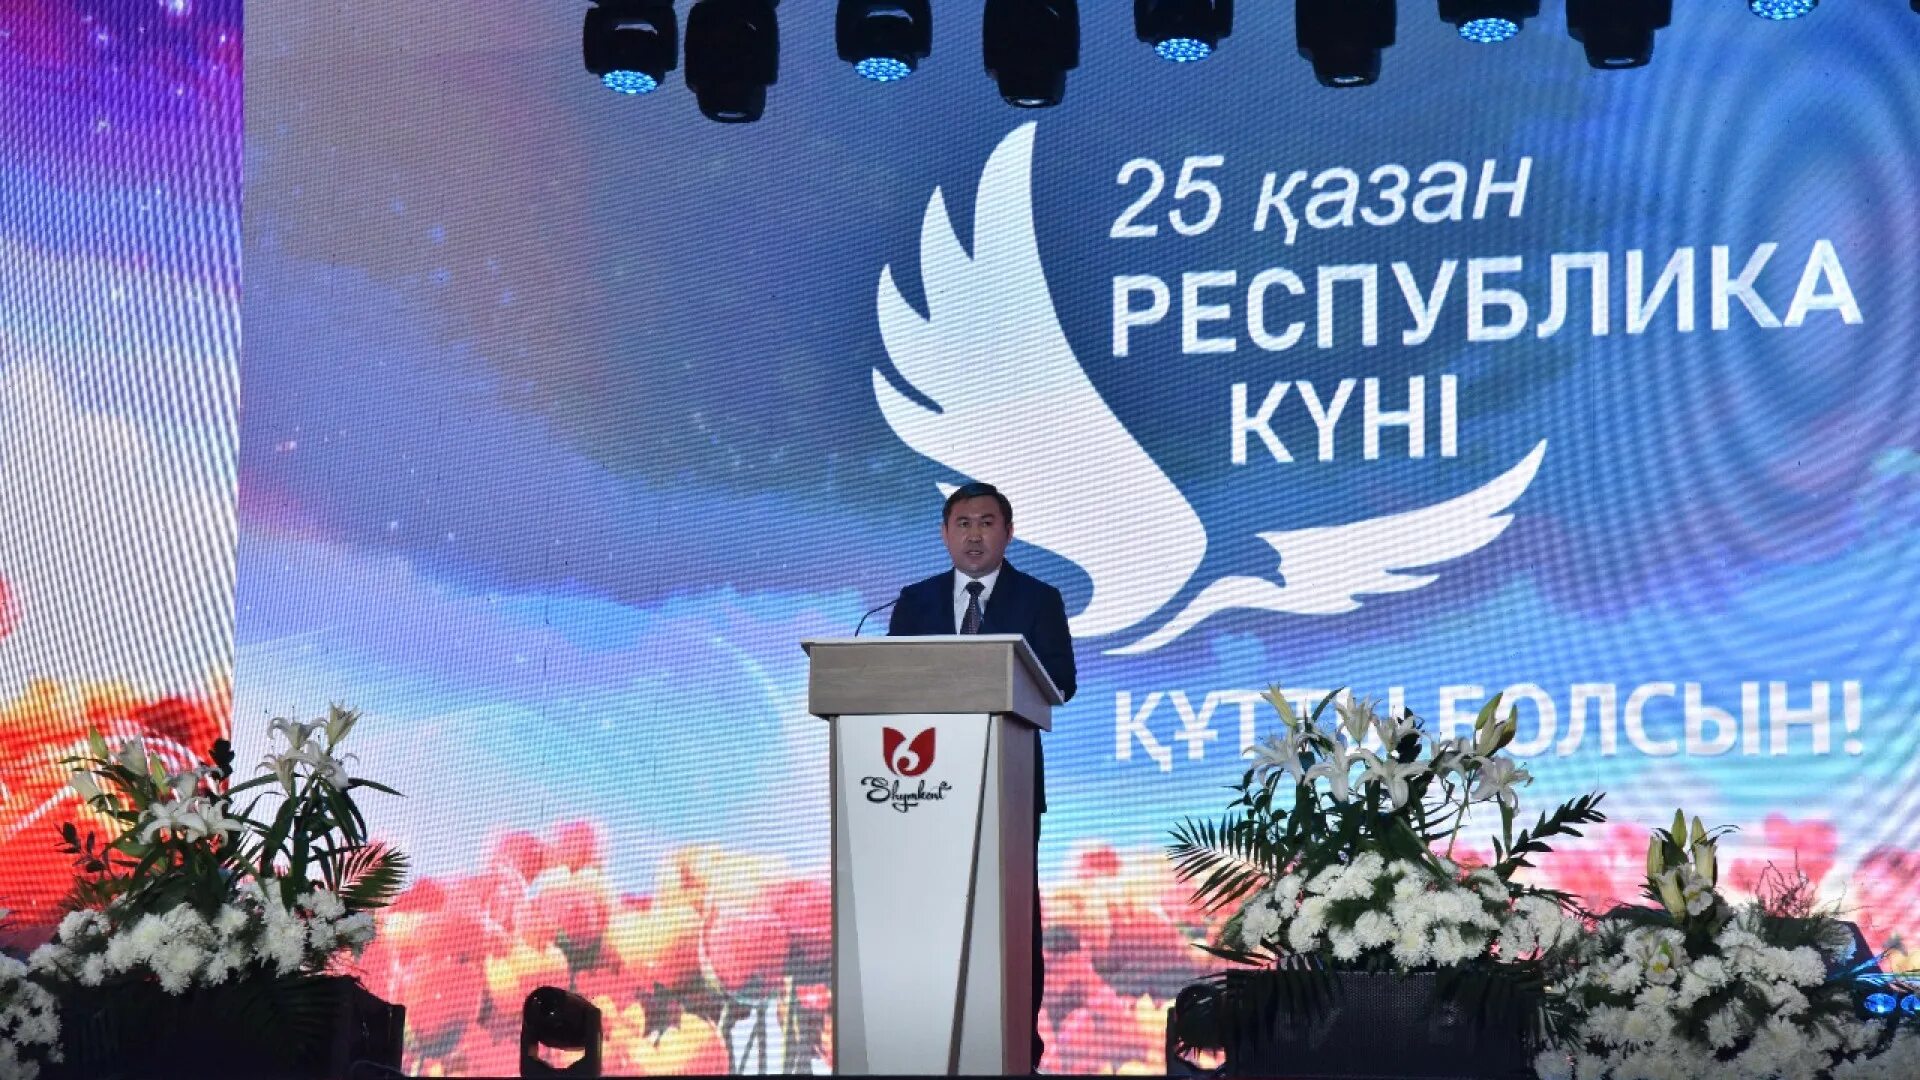 25 Октября праздник в Казахстане. Фото день Республики Казахстан поздравление. Торжественное мероприятие в Казахстане. Открытка с праздником день Республики Казахстан 25 октября.